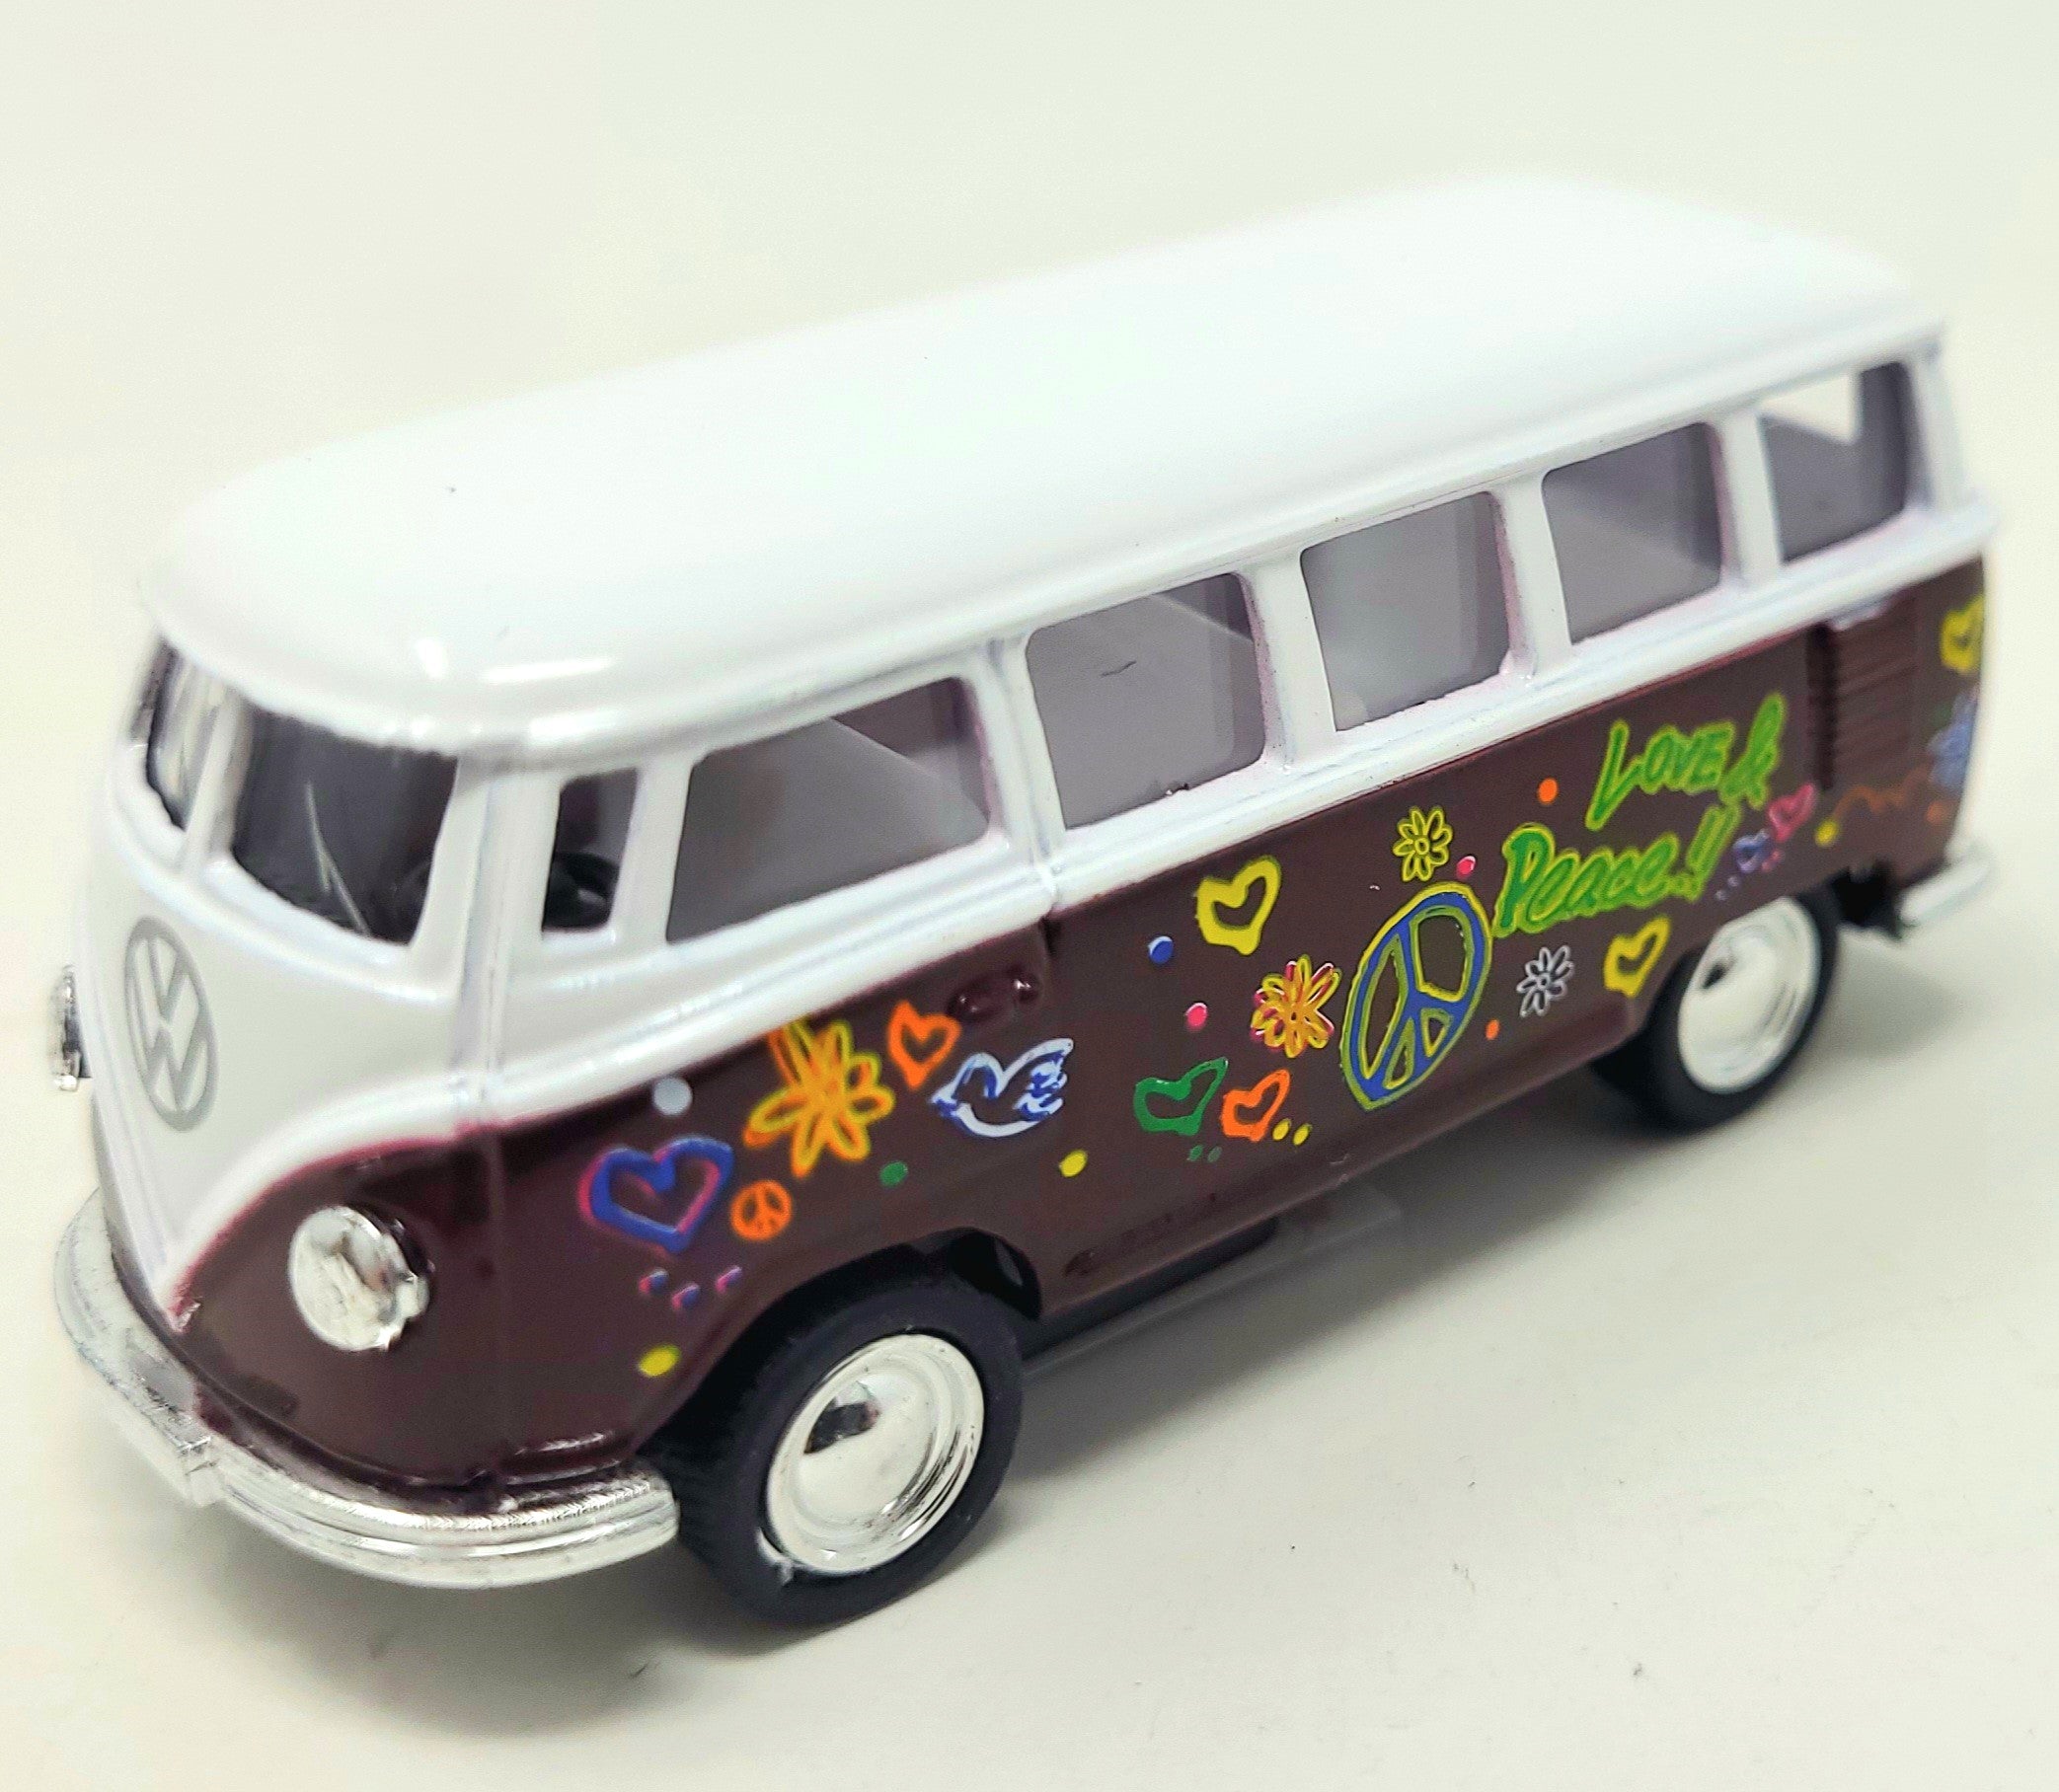 Kandytoys 1962 Volkswagon Hippy Bus Toy 6.5cm